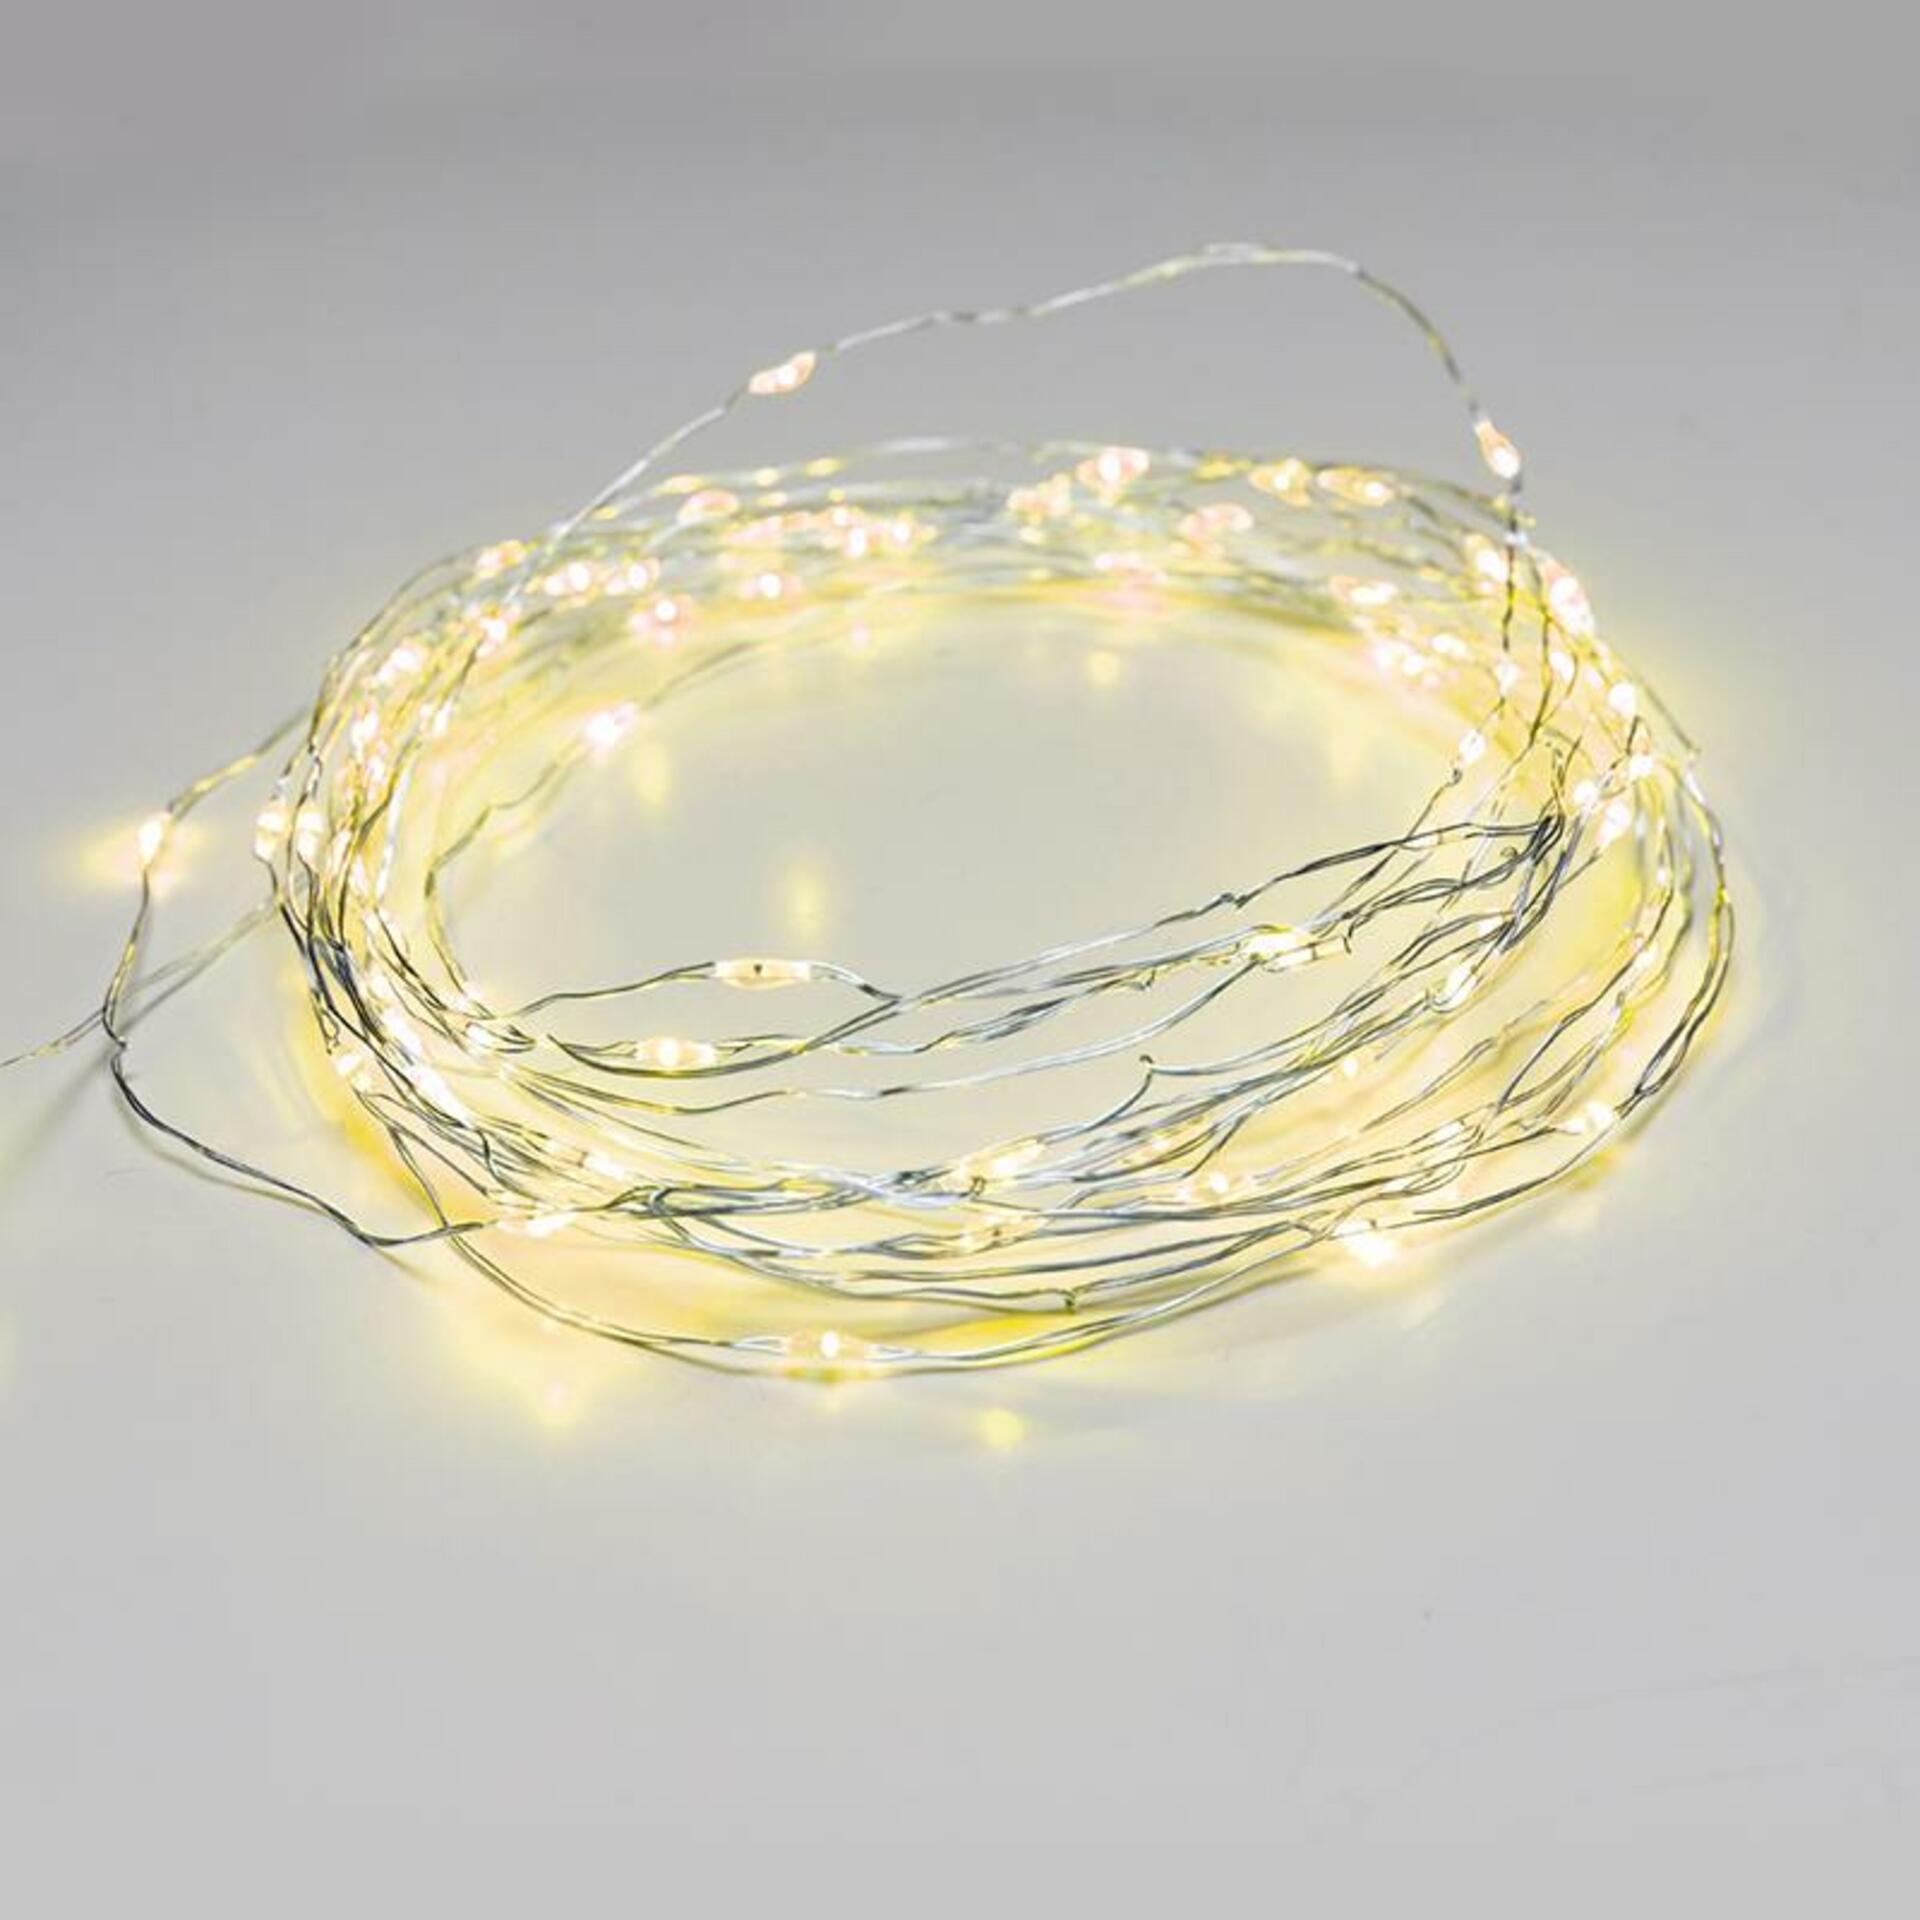 Levně ACA Lighting 100 LED dekorační řetěz žlutá stříbrný měďený kabel 220-240V + 8 funkcí IP44 10m+3m 1.8W X01100712